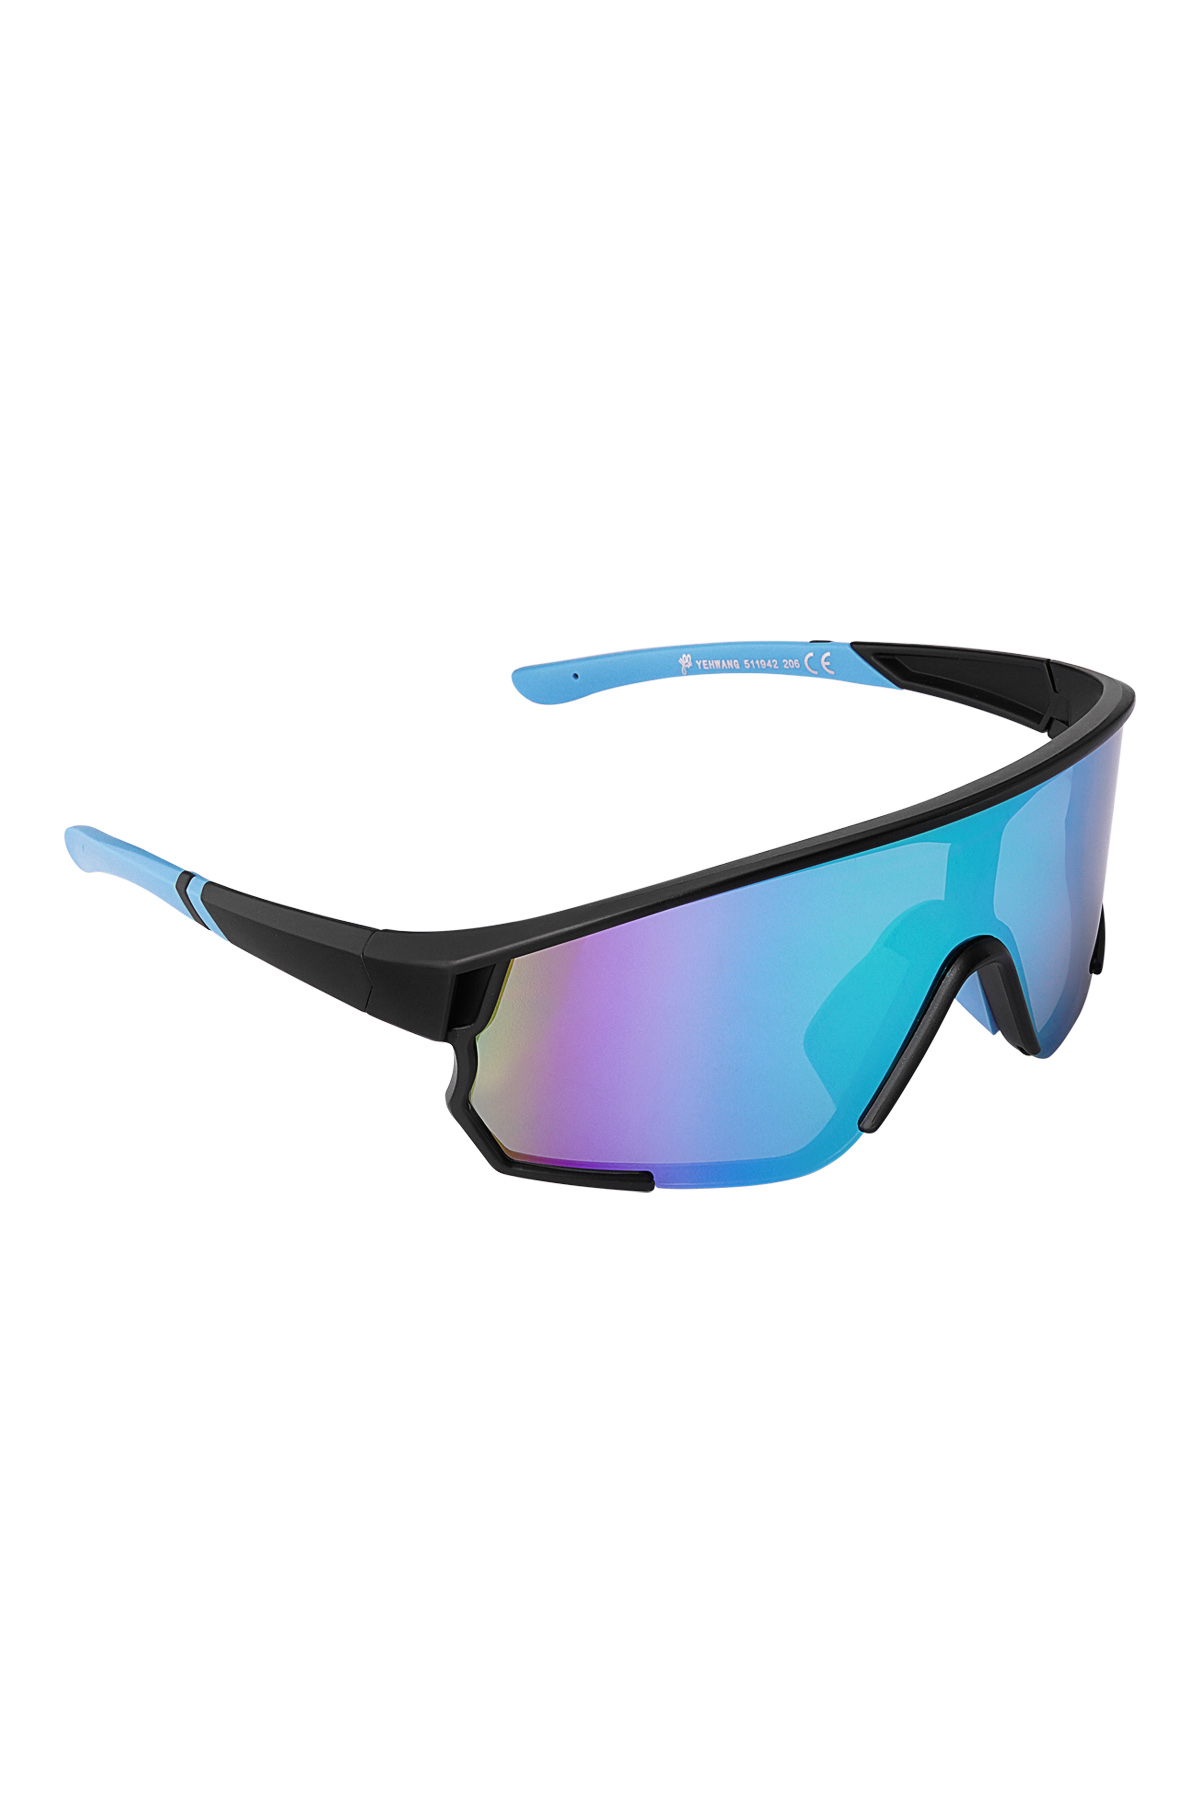 Gafas de sol con lentes de colores - negro/azul h5 